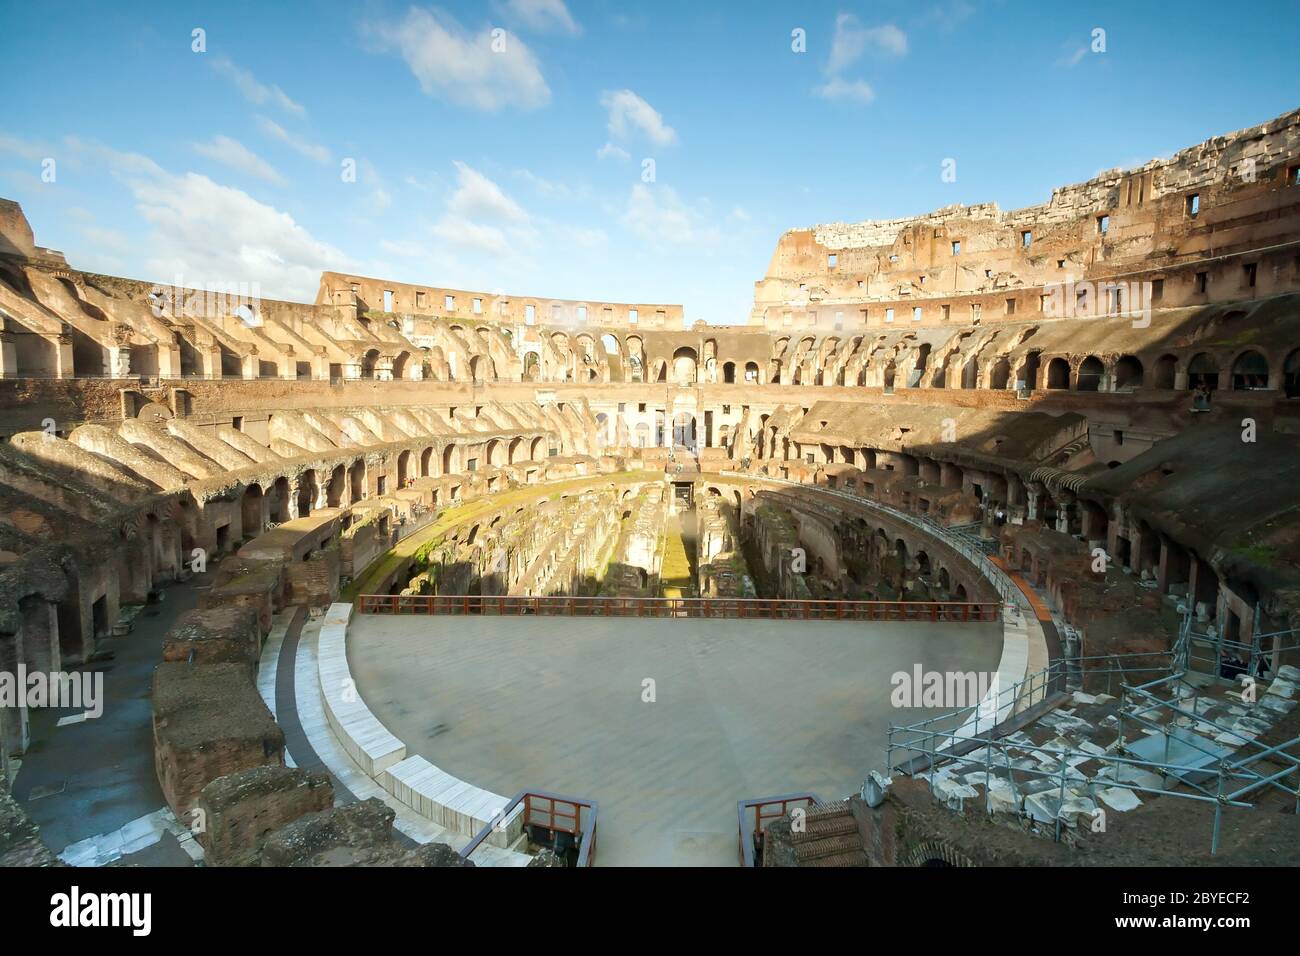 Colosseum Architecture Interior Stock Photo